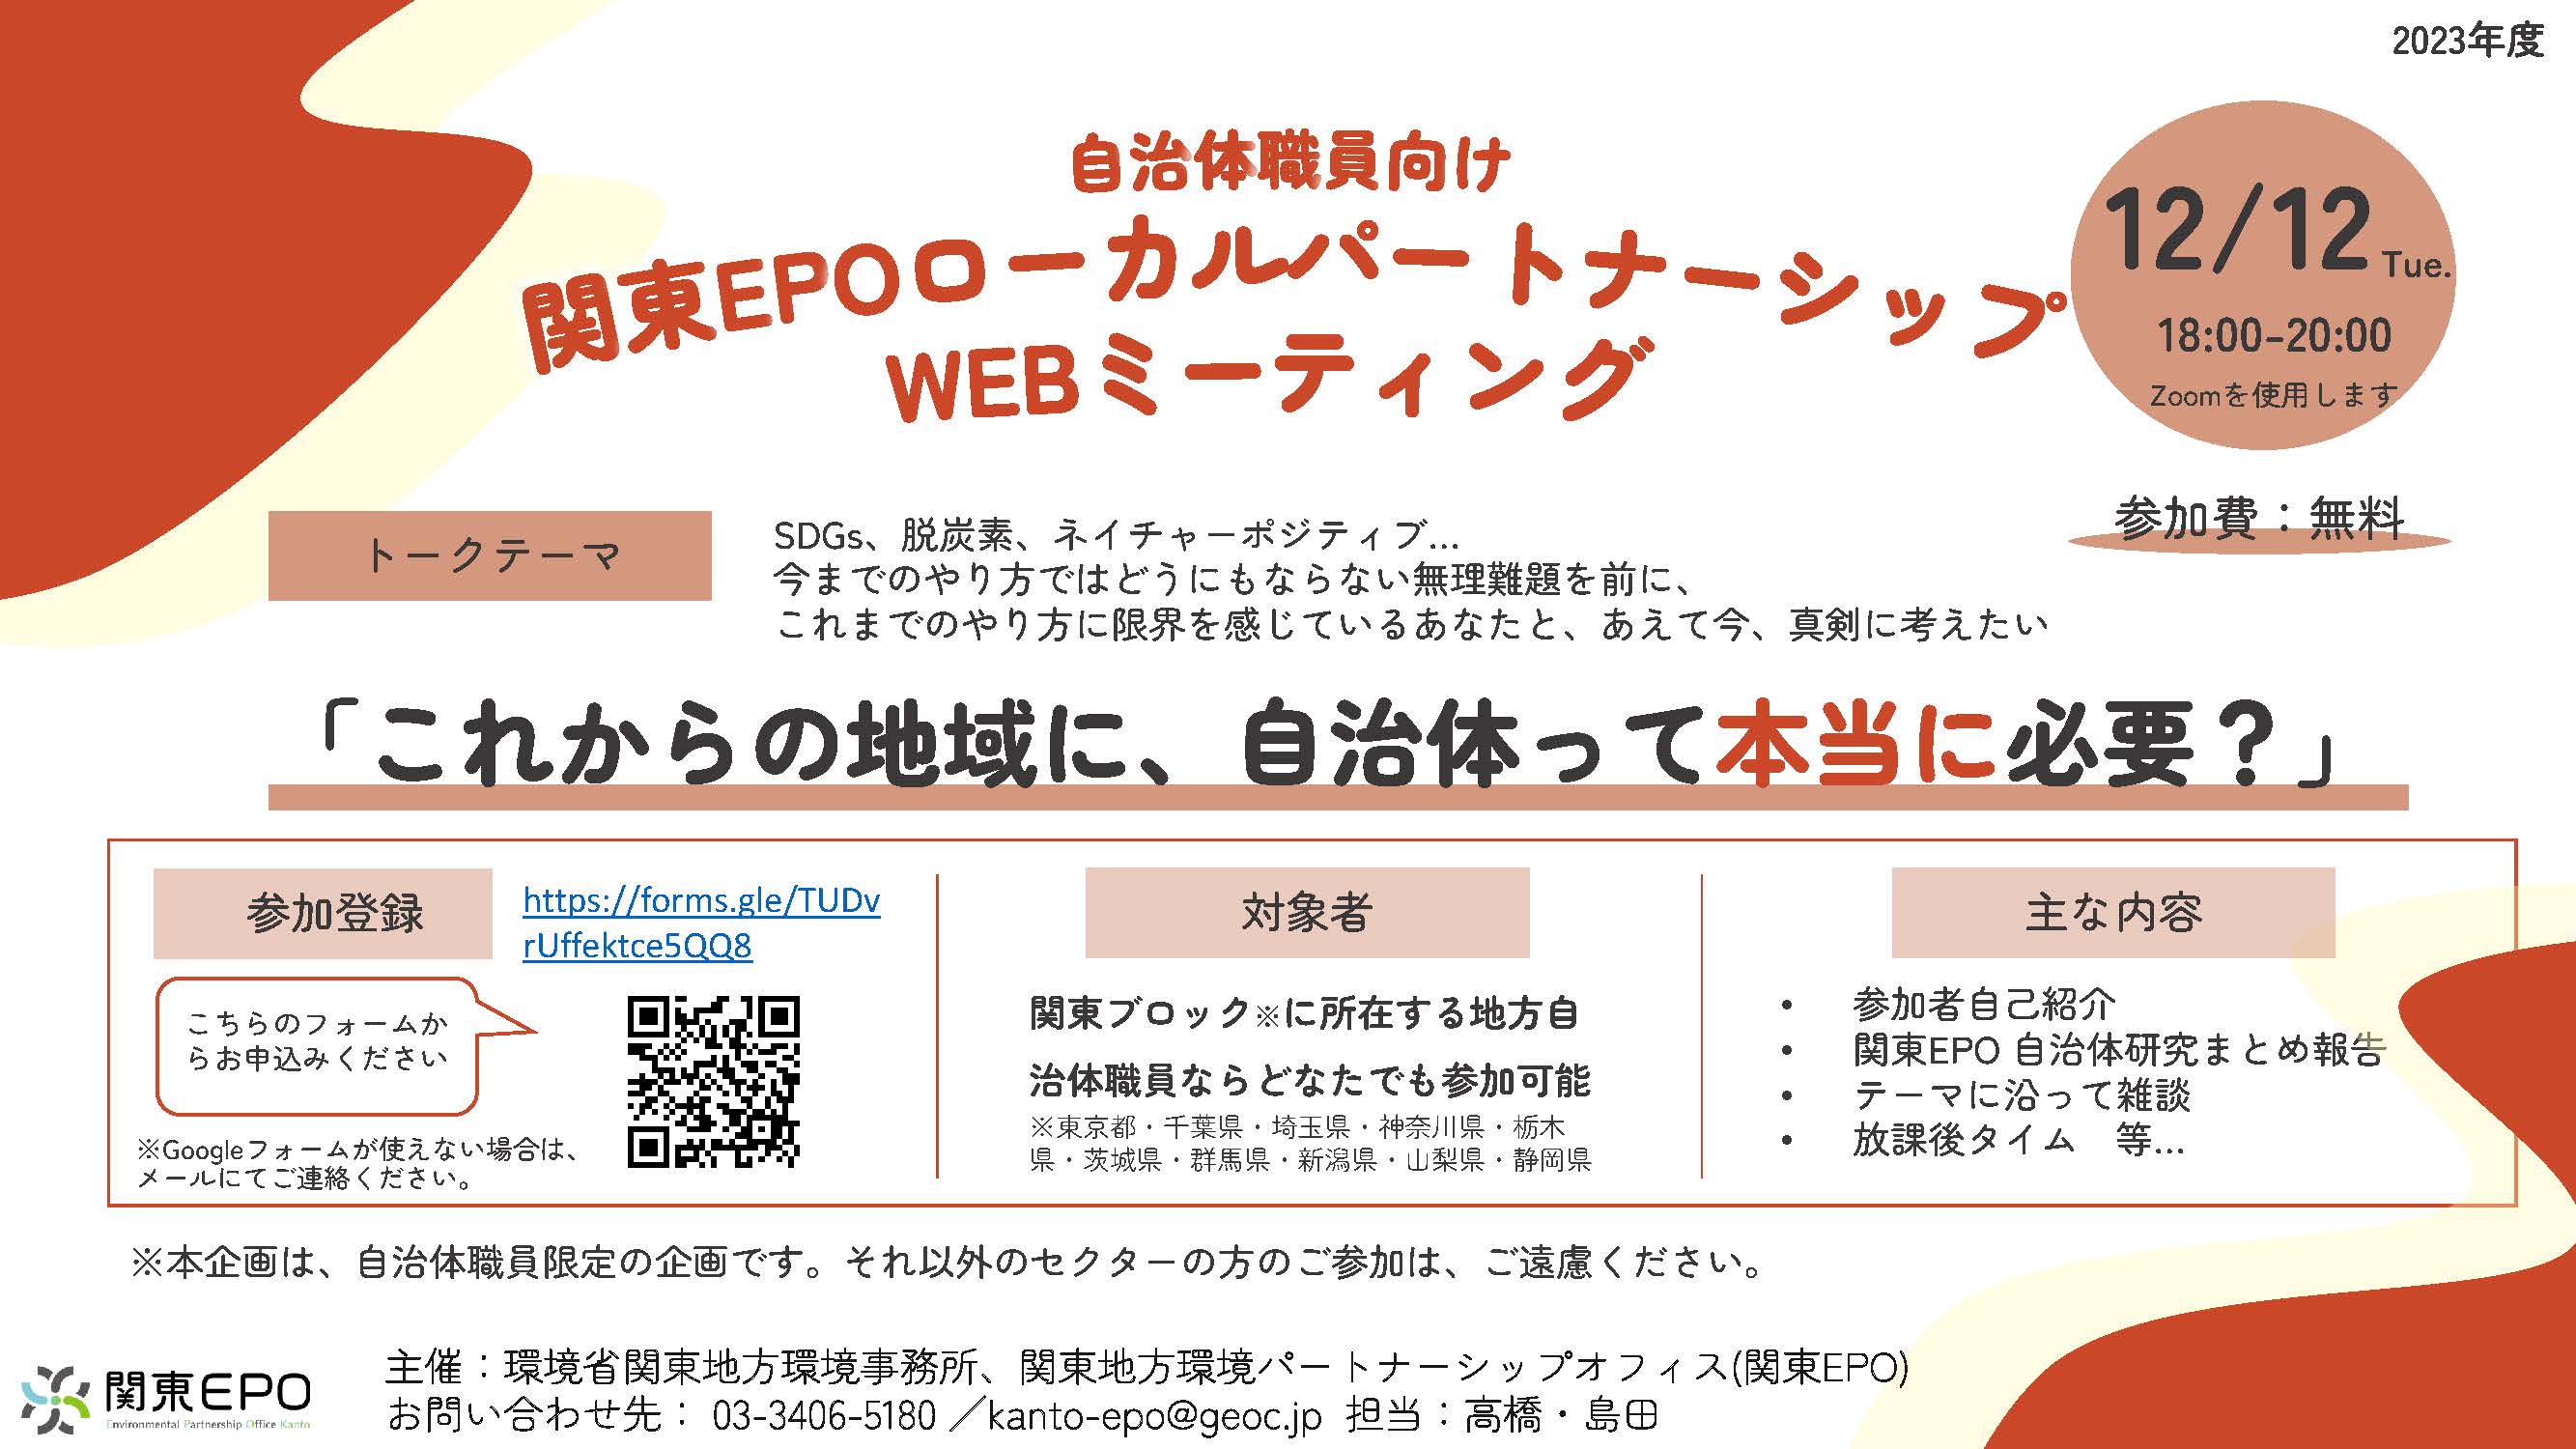 自治体向け企画：関東EPOローカルパートナーシップWEBミーティングVOL.1開催